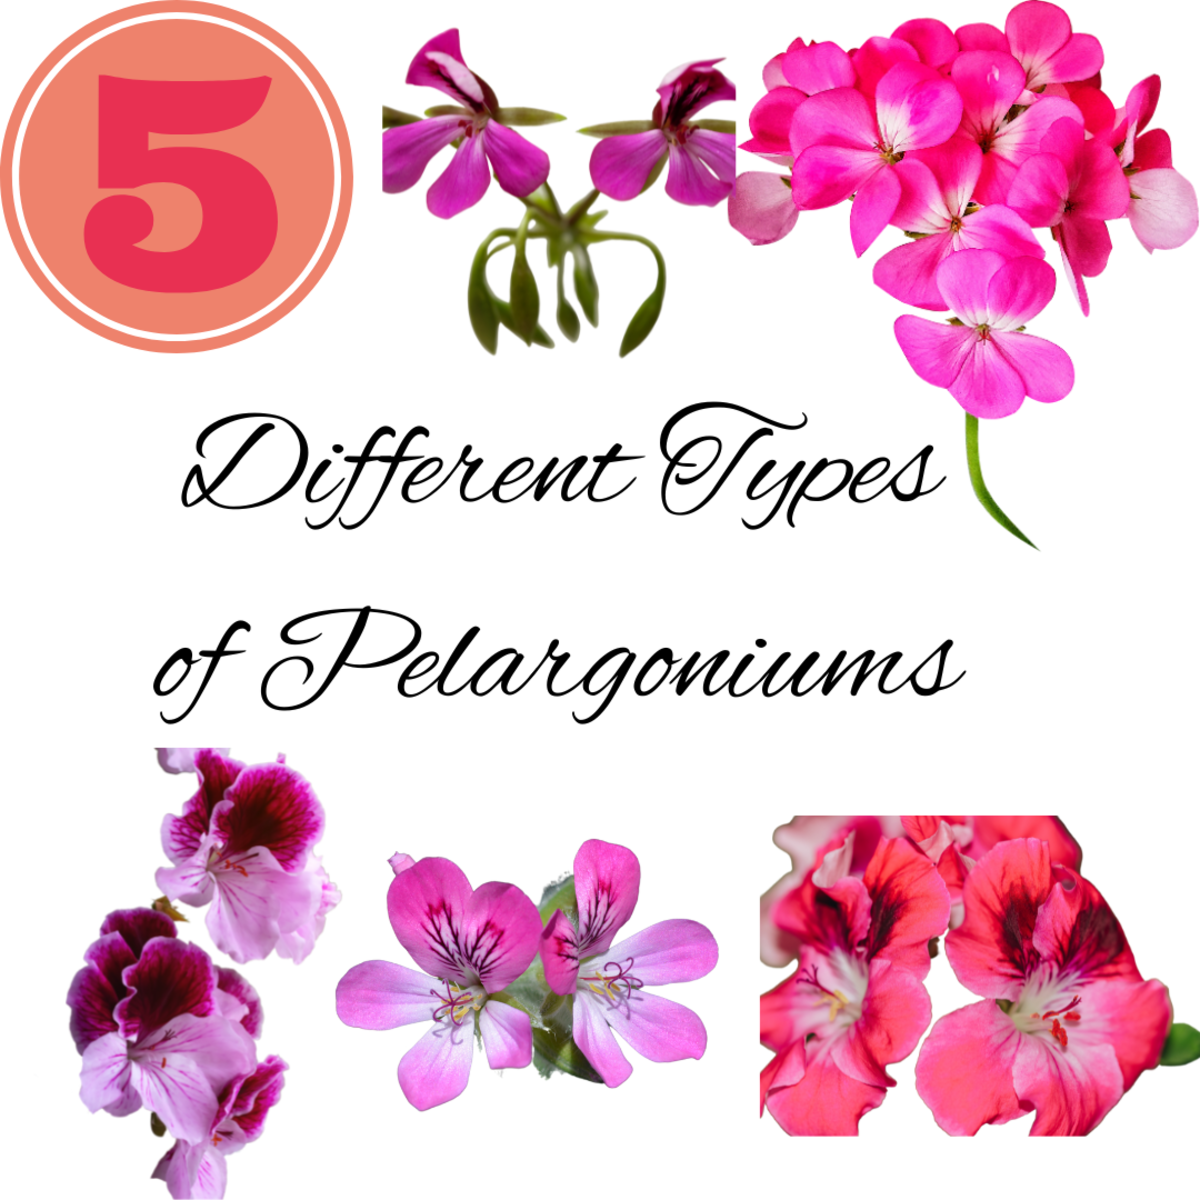 5 Different Types of Geraniums (Pelargoniums)